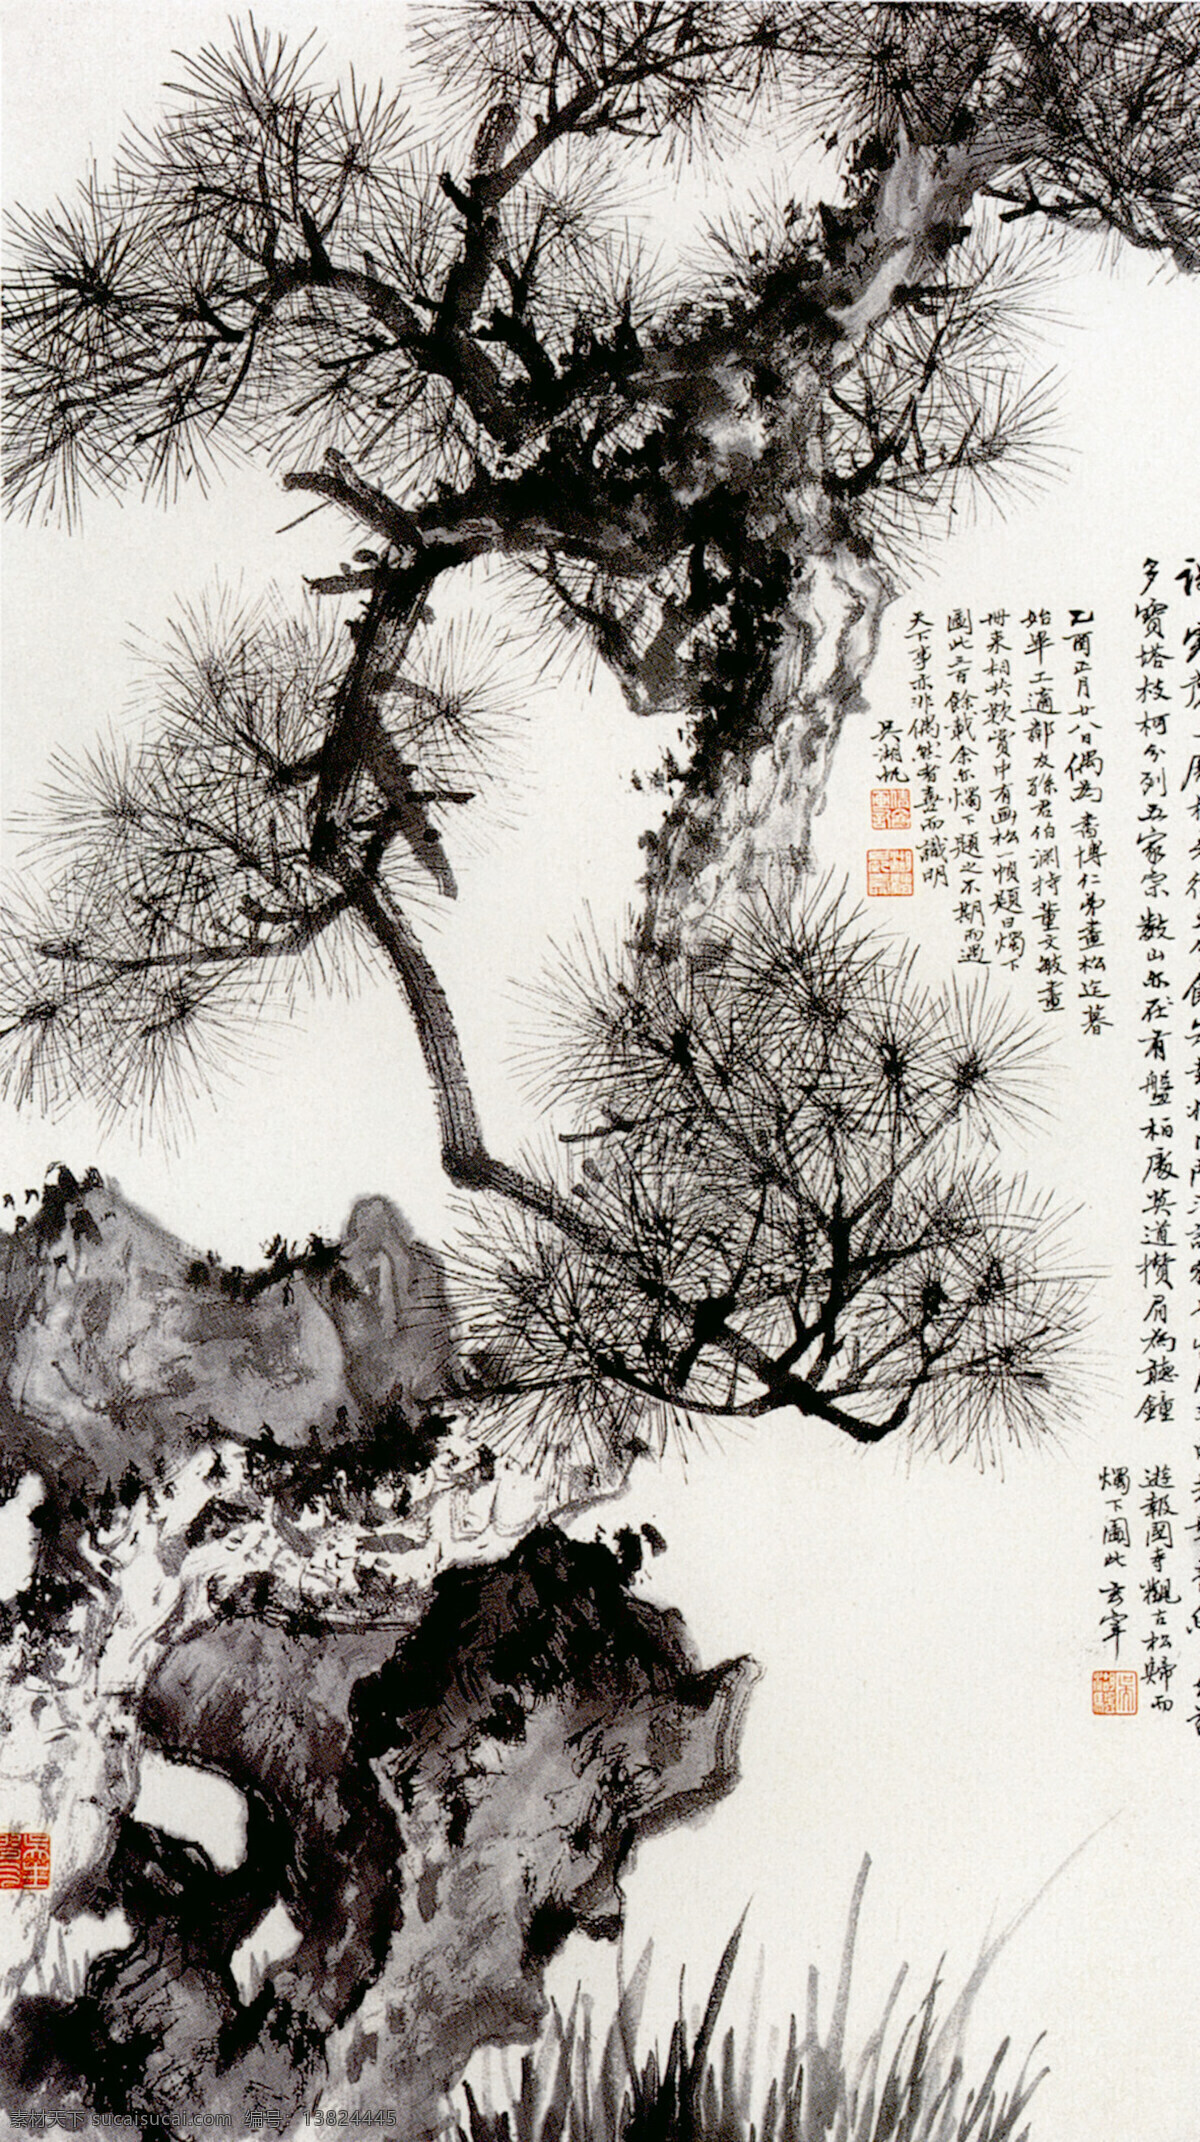 松石 绘画 水墨 丹青 松树 山石 中国国画篇 文化艺术 绘画书法